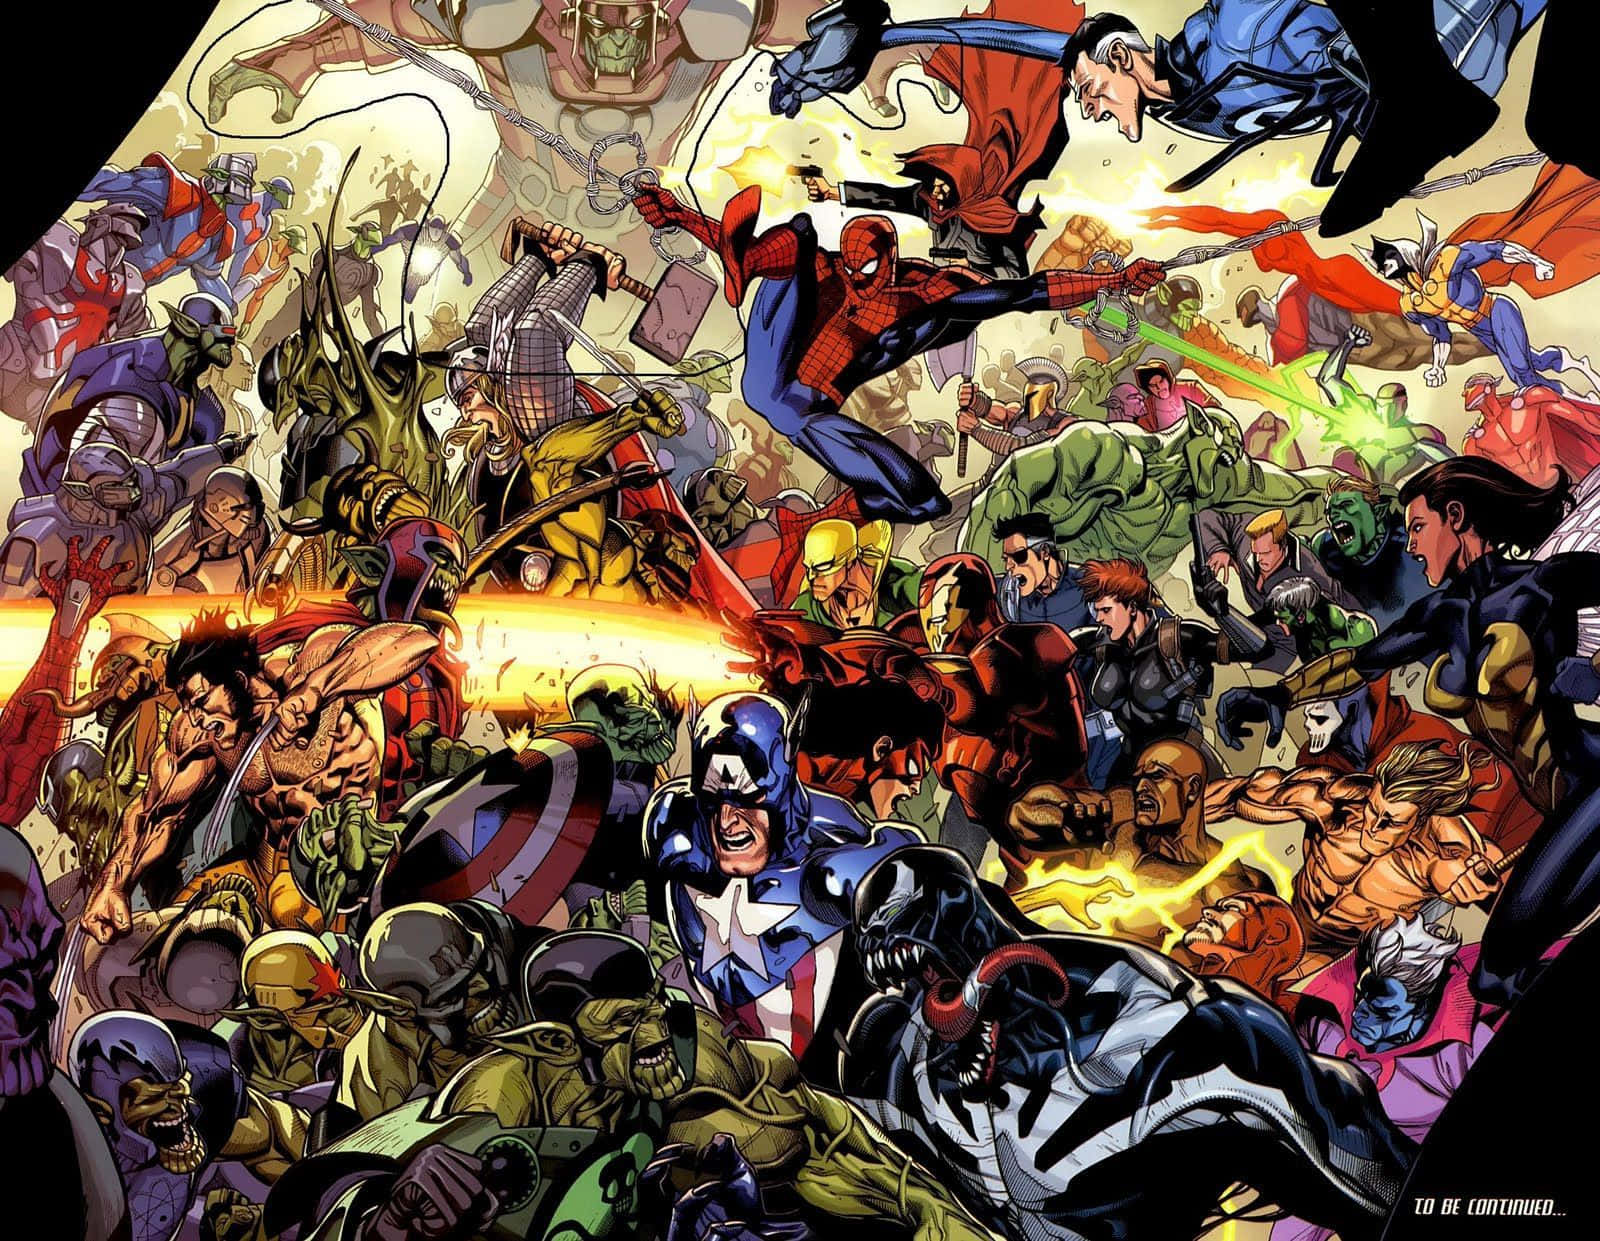 Avengerscomics - Avengers - Avengers - Avengers - A